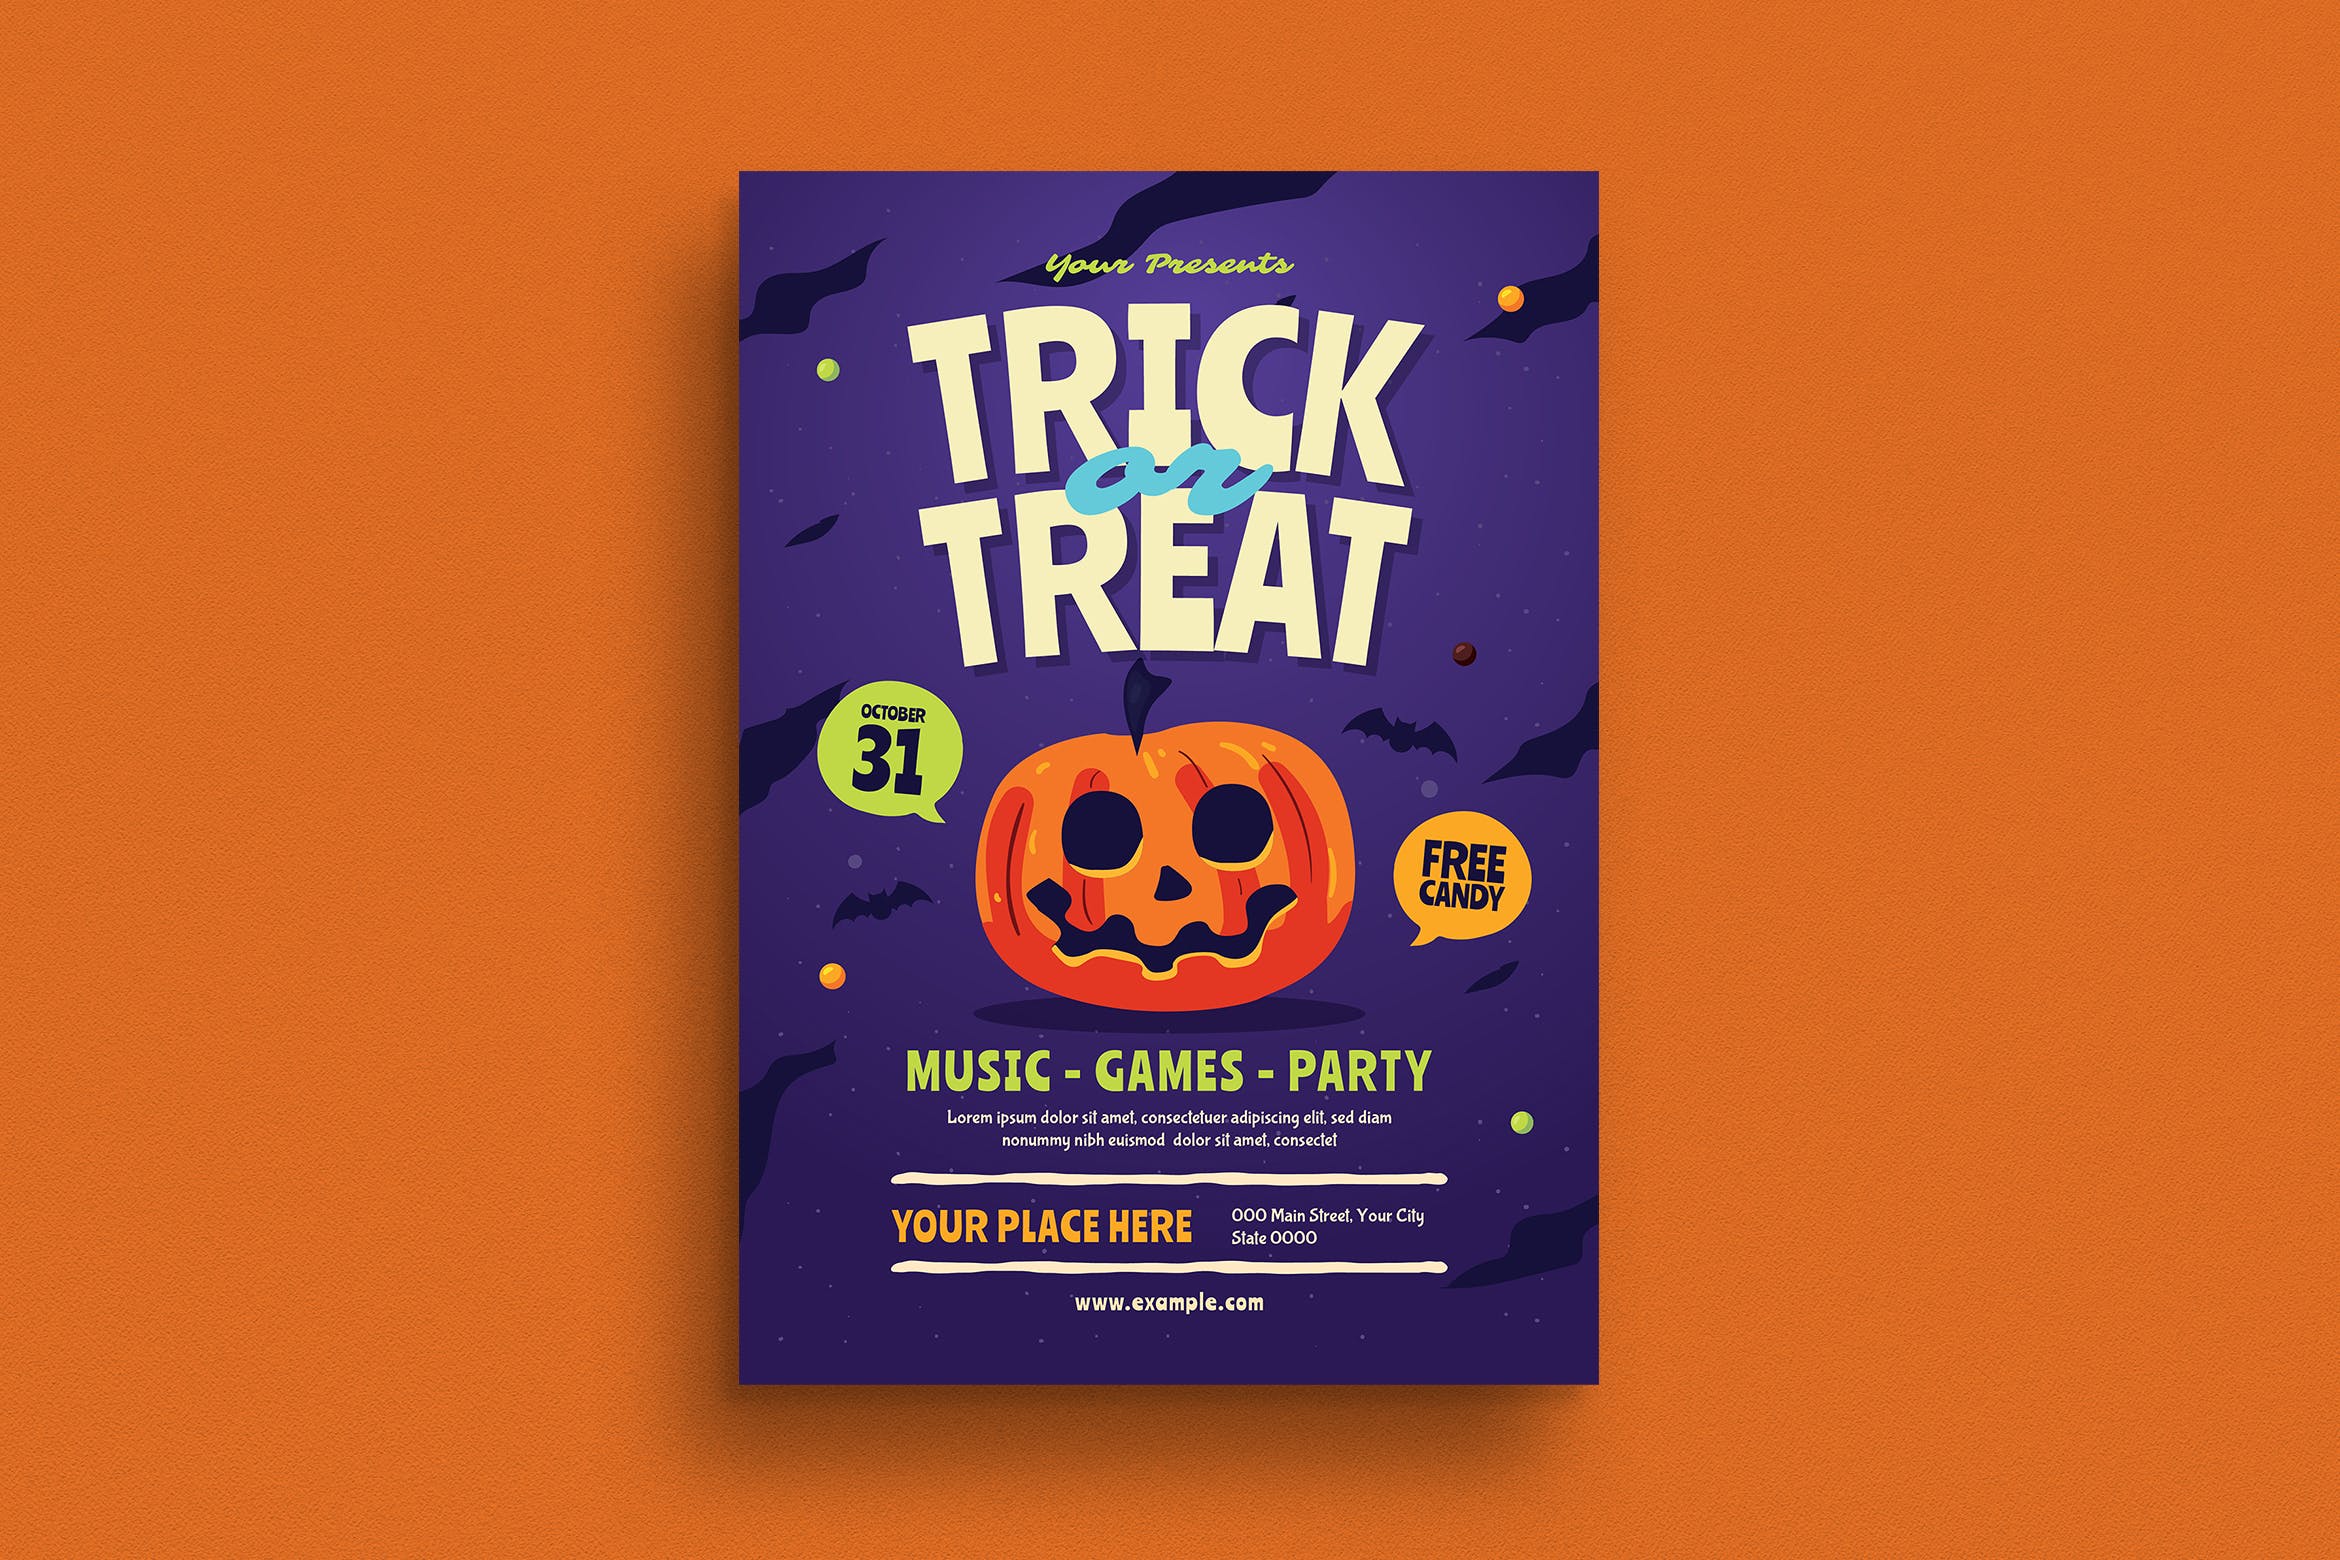 万圣节不给糖就捣乱主题活动海报传单设计模板 Halloween Trick or Treat Event Flyer插图